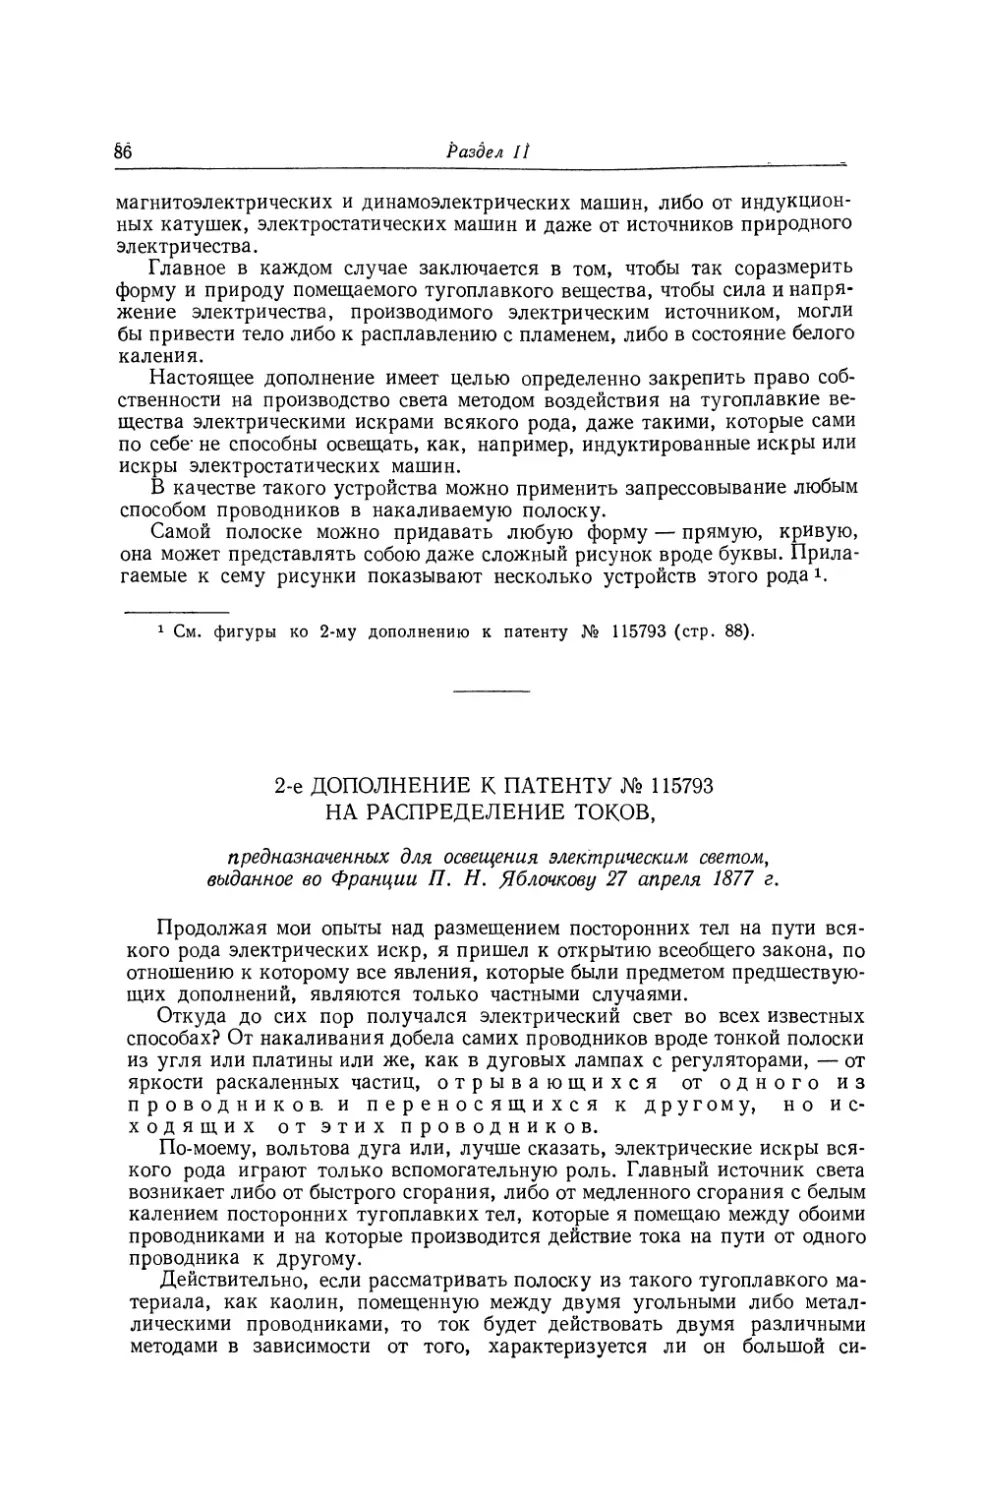 2-е дополнение к патенту № 115793 на распределение токов, предназначенных для освещения электрическим светом, выданное во Франции П. Н. Яблочкову 27 апреля 1877 г